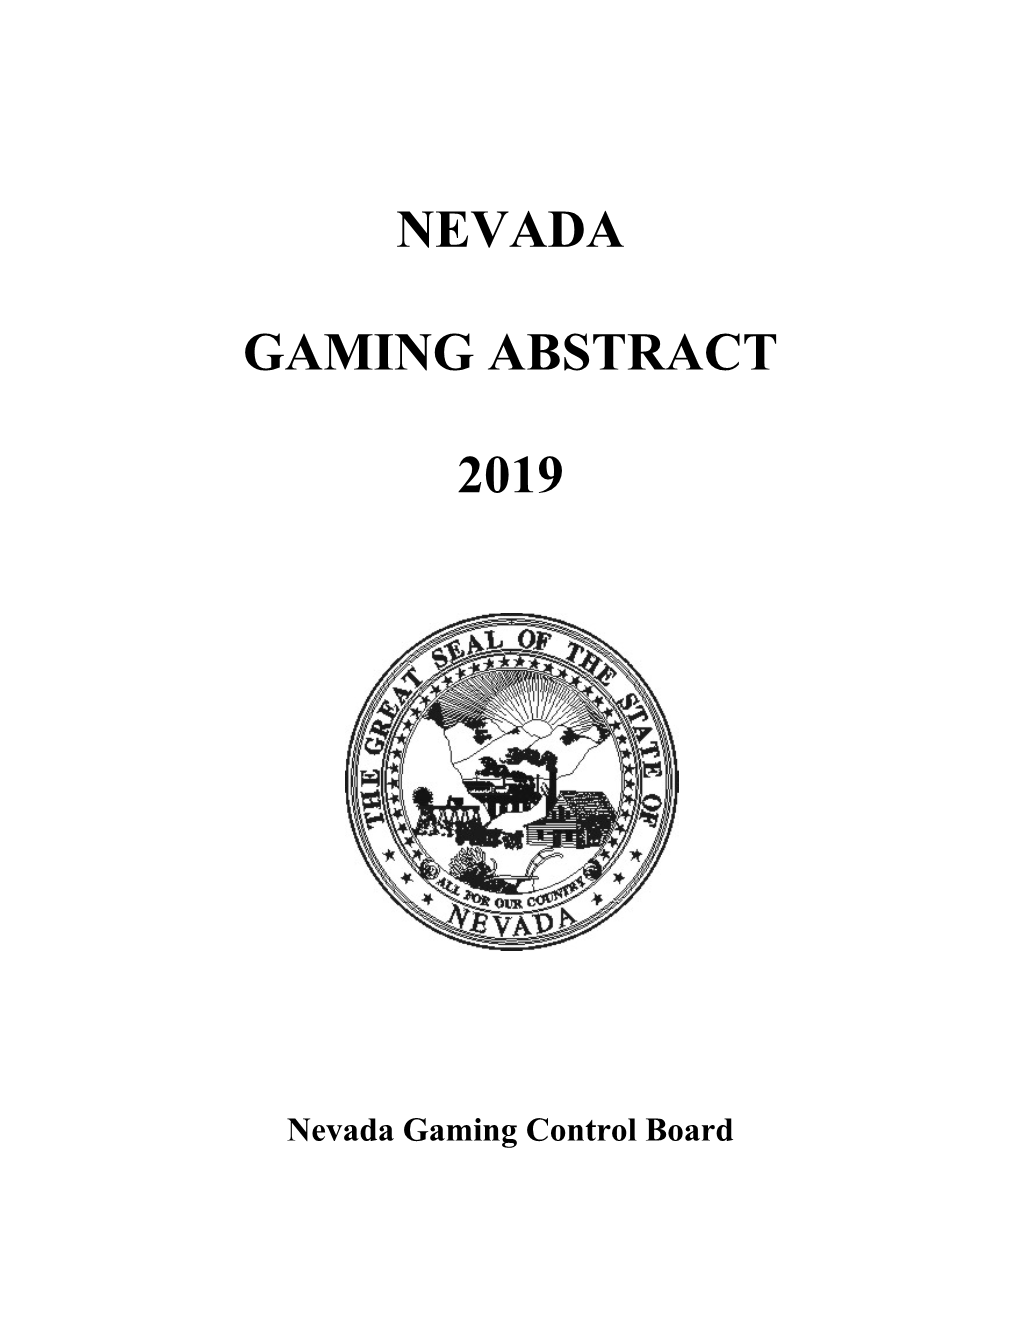 Nevada Gaming Abstract 2019